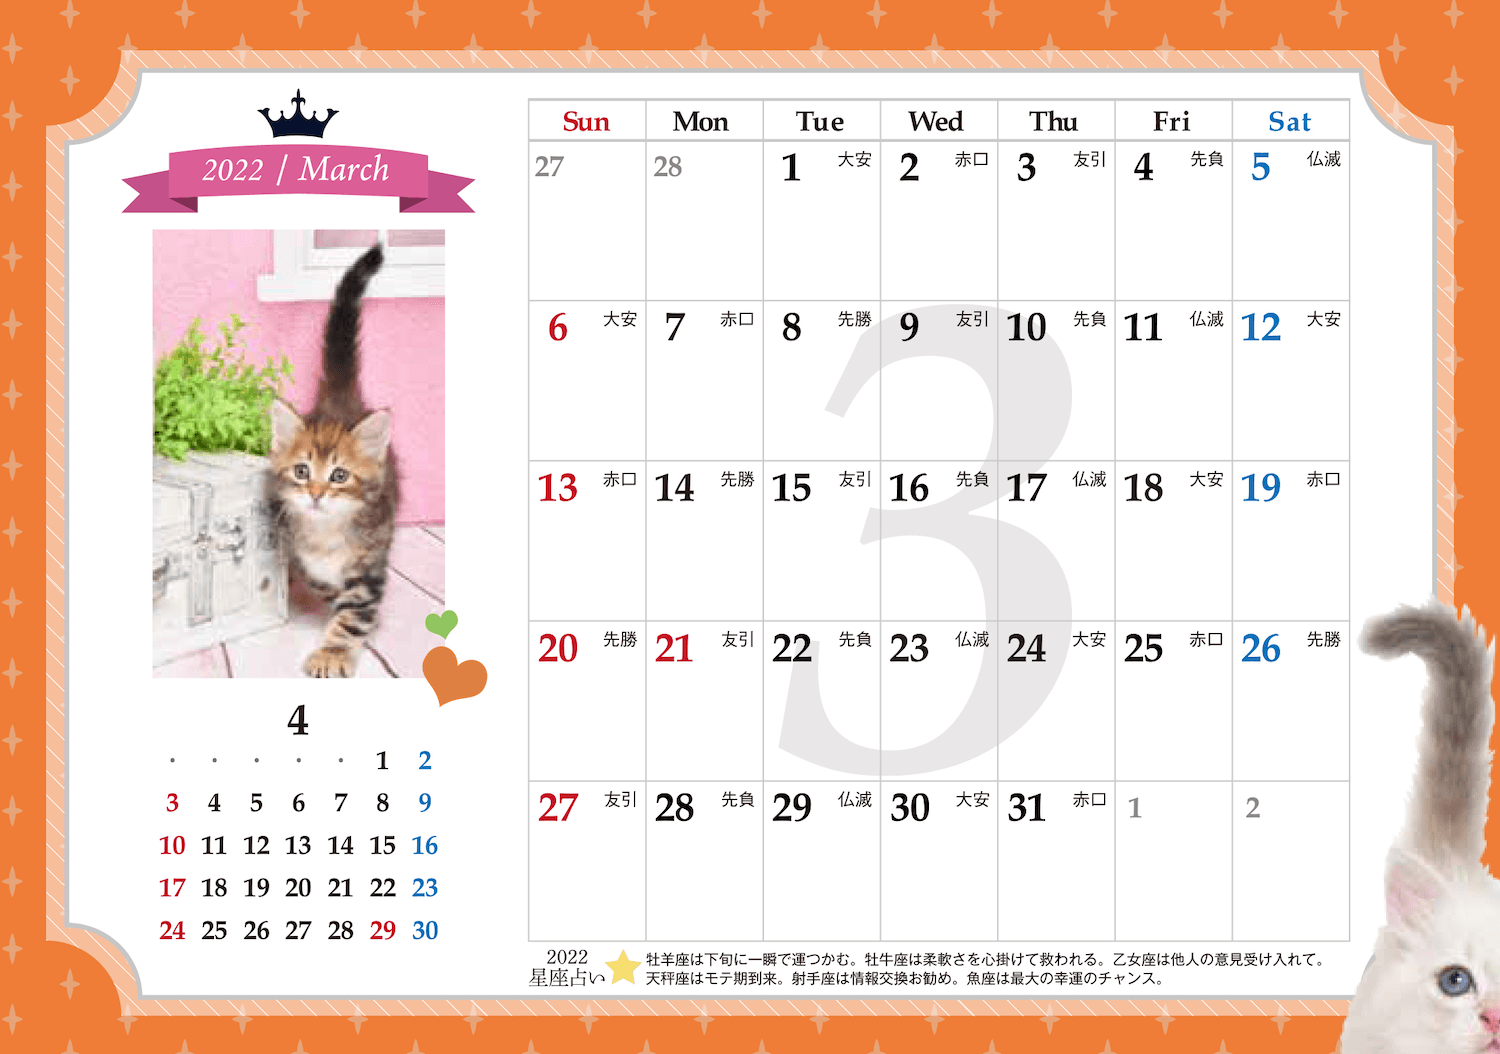 書き込み欄や星座占いもあるカレンダー「猫様のお言葉 ネ・コ・ト・バ2022」